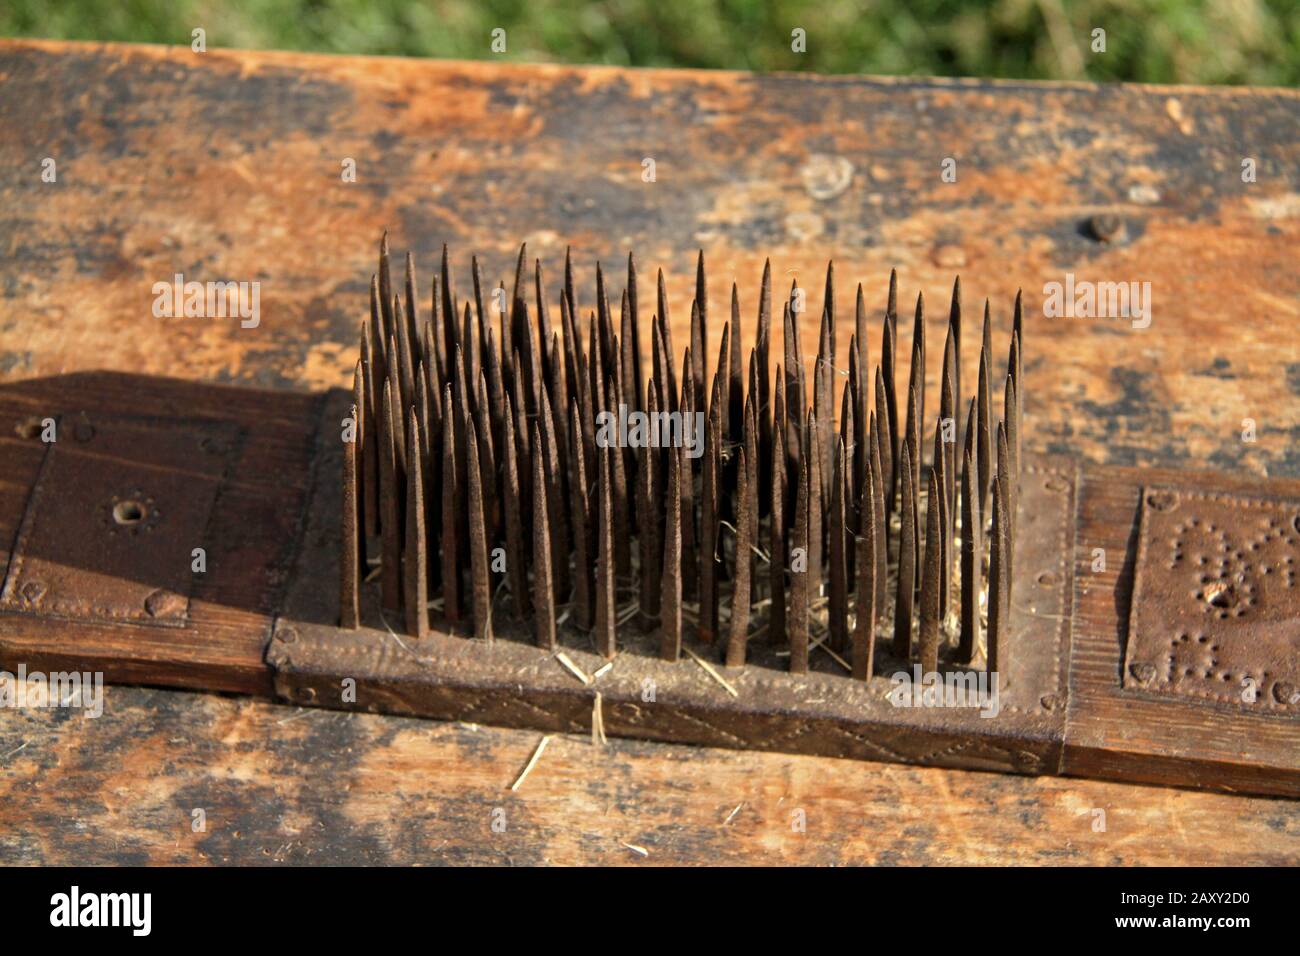 Flachshetchel/-Kamm, altes Werkzeug zum Trennen der Flachsfasern bei der  Herstellung von Leinen Stockfotografie - Alamy